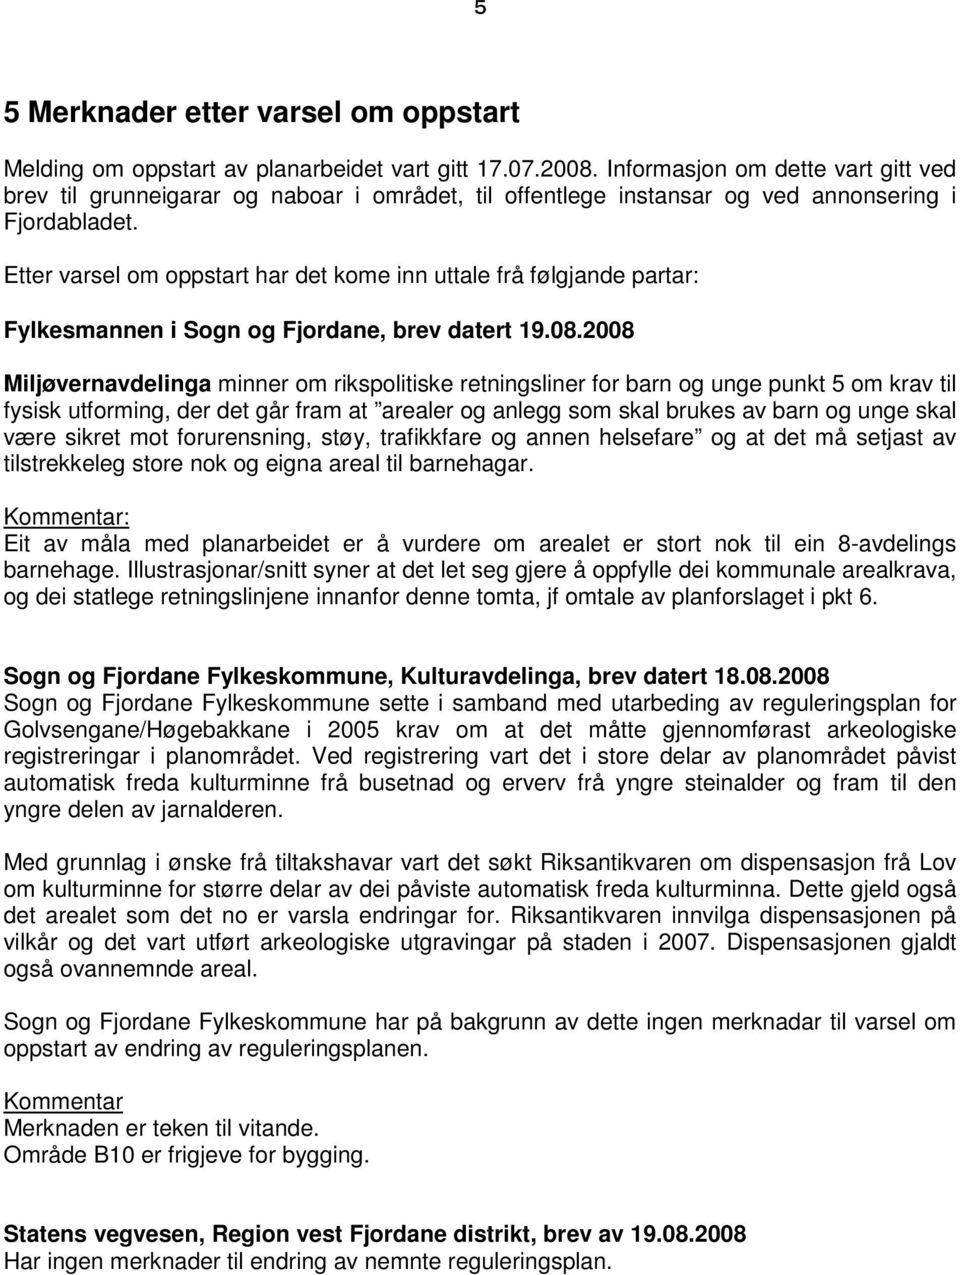 Etter varsel om oppstart har det kome inn uttale frå følgjande partar: Fylkesmannen i Sogn og Fjordane, brev datert 19.08.